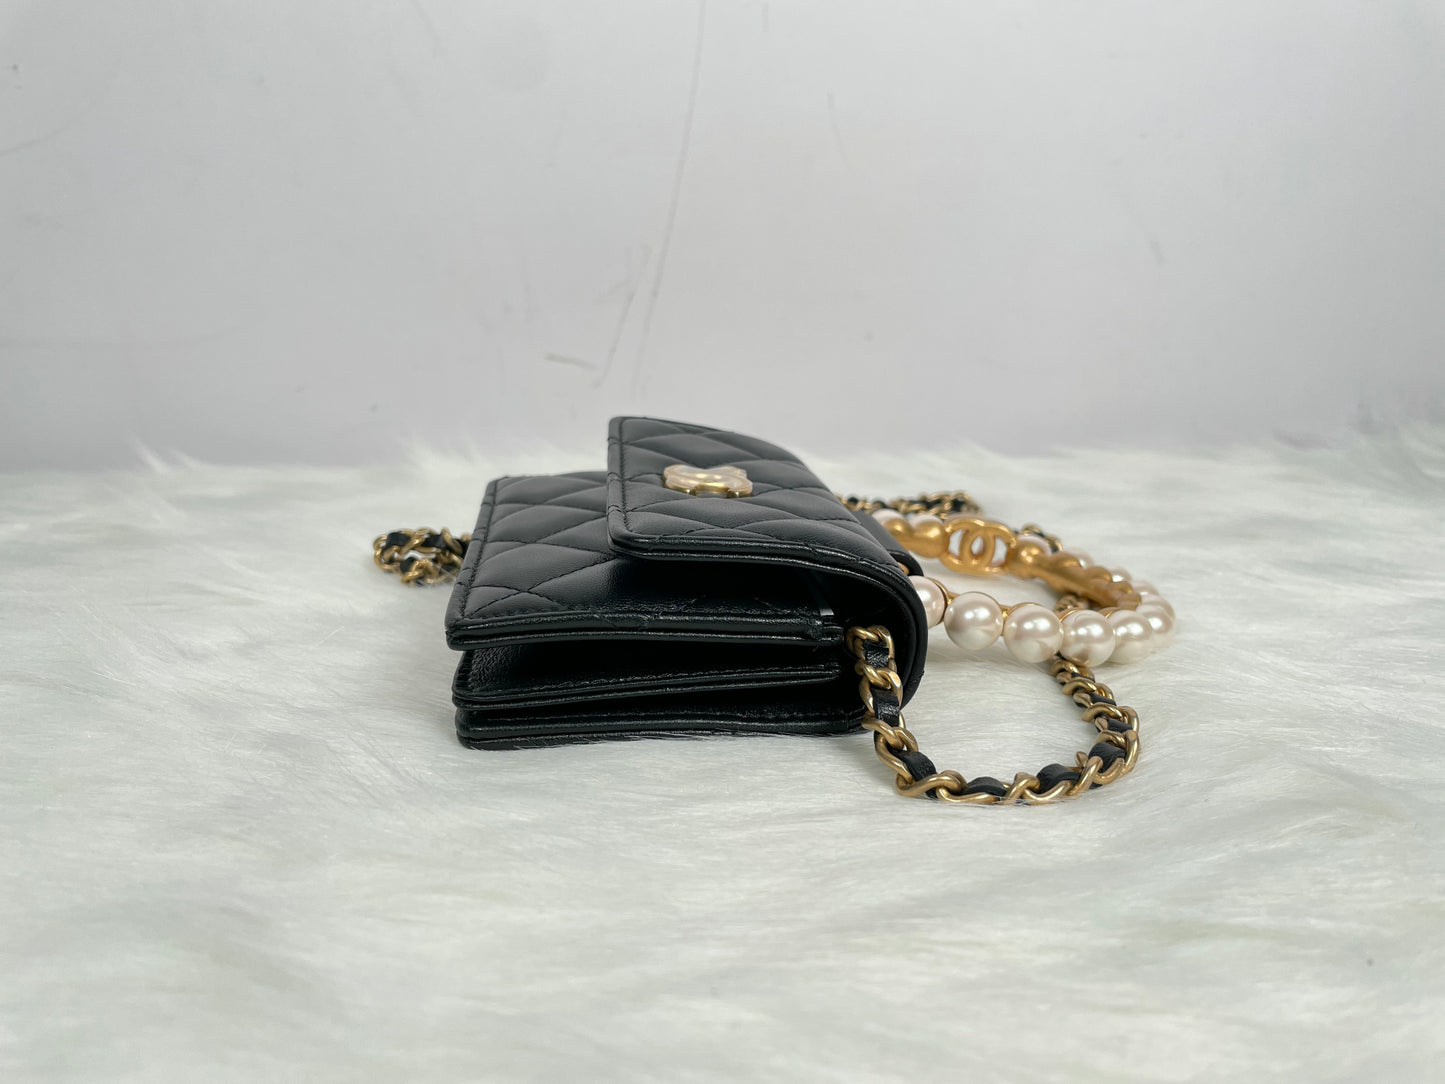 Chanel Clutch With Chain 黑色羊皮金扣珍珠手挽